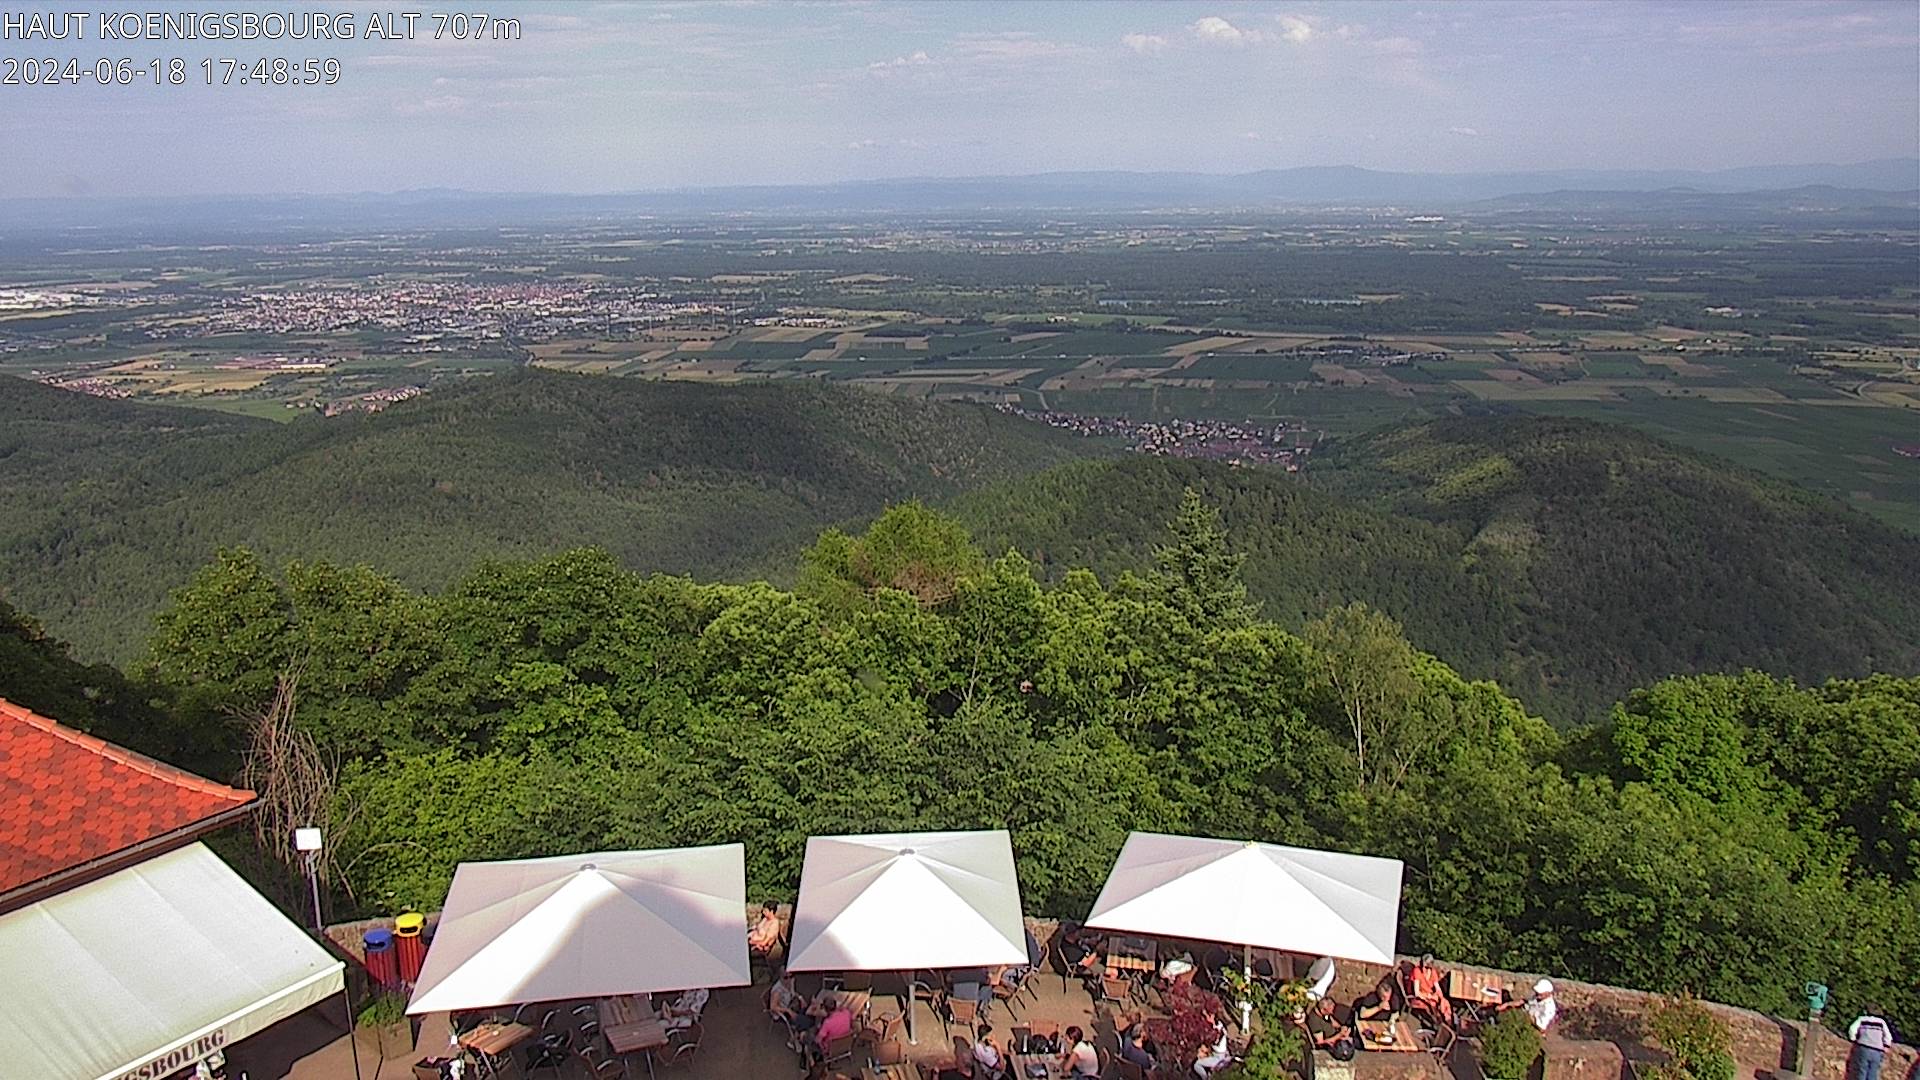 Webcam depuis le Château du Haut-Koenigsbourg à 700 mètres d'altitude, sur la D159